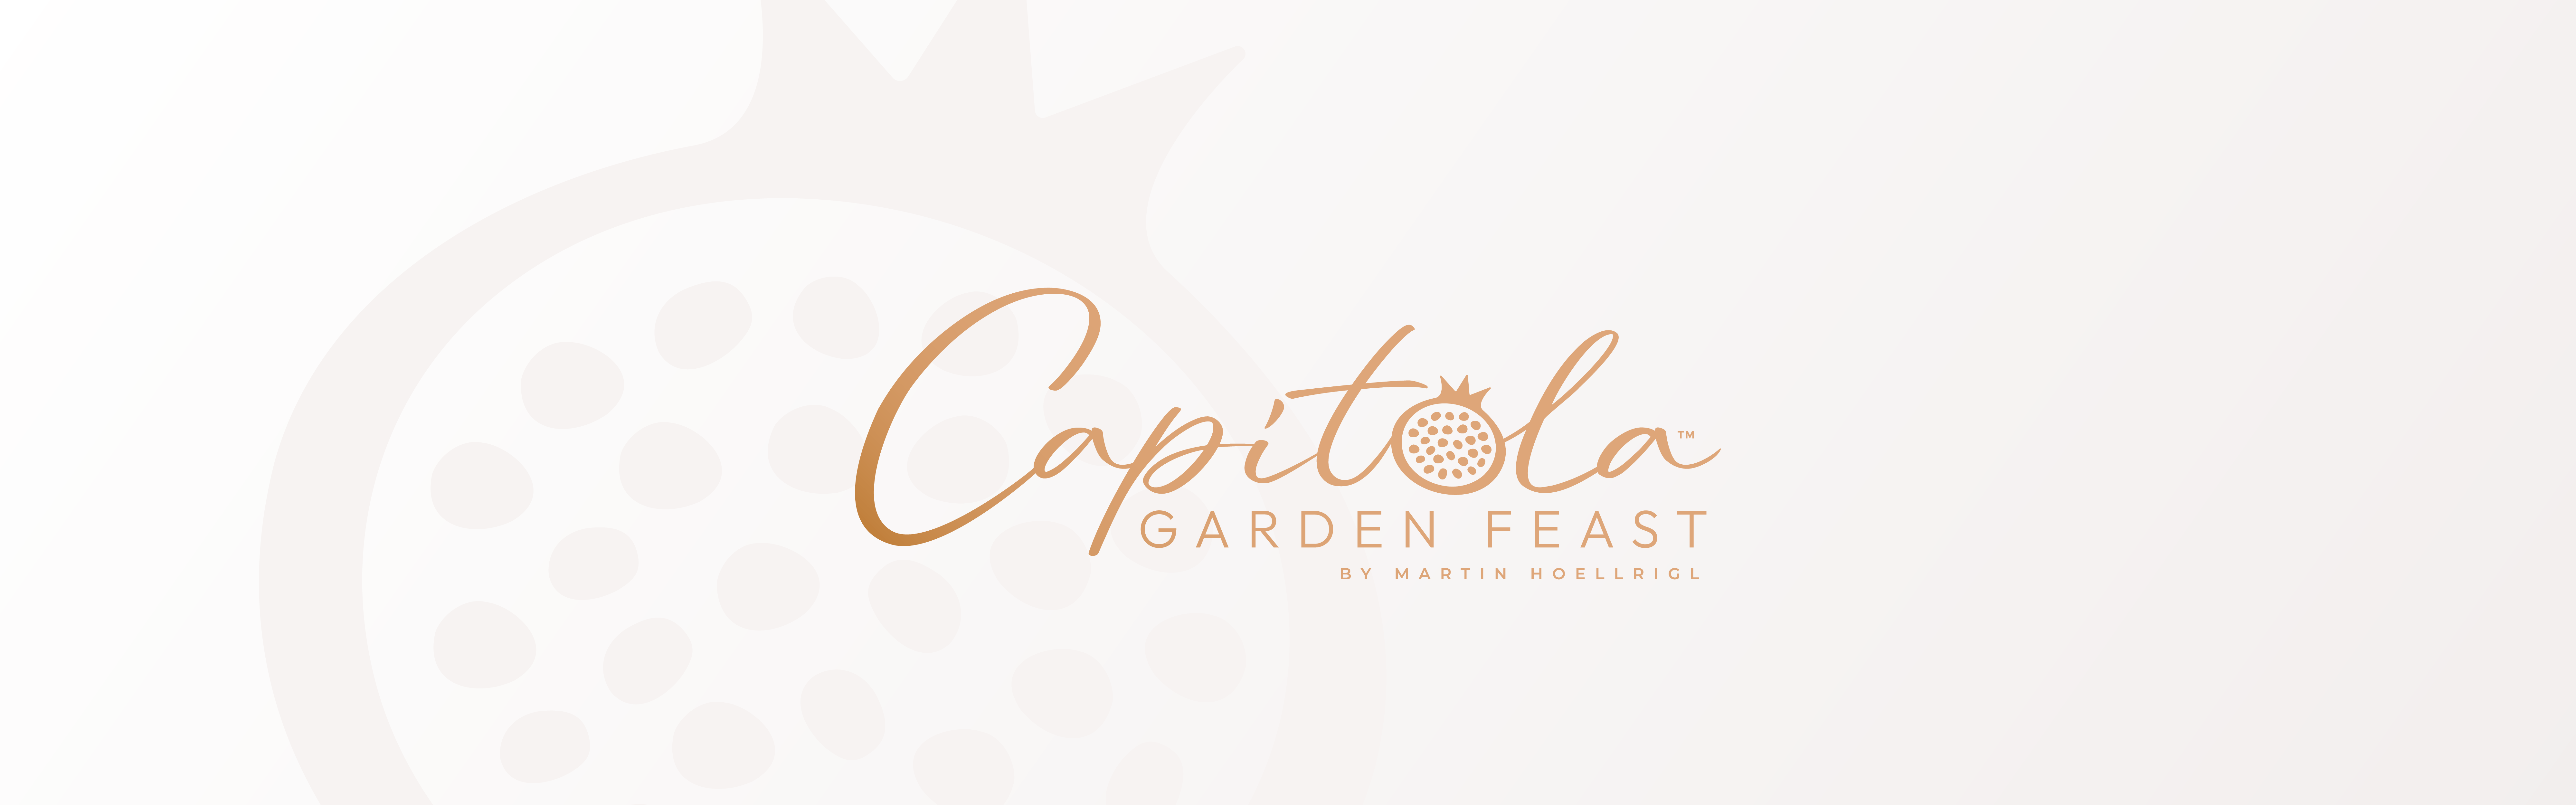 Capitola Garden Feast logo design